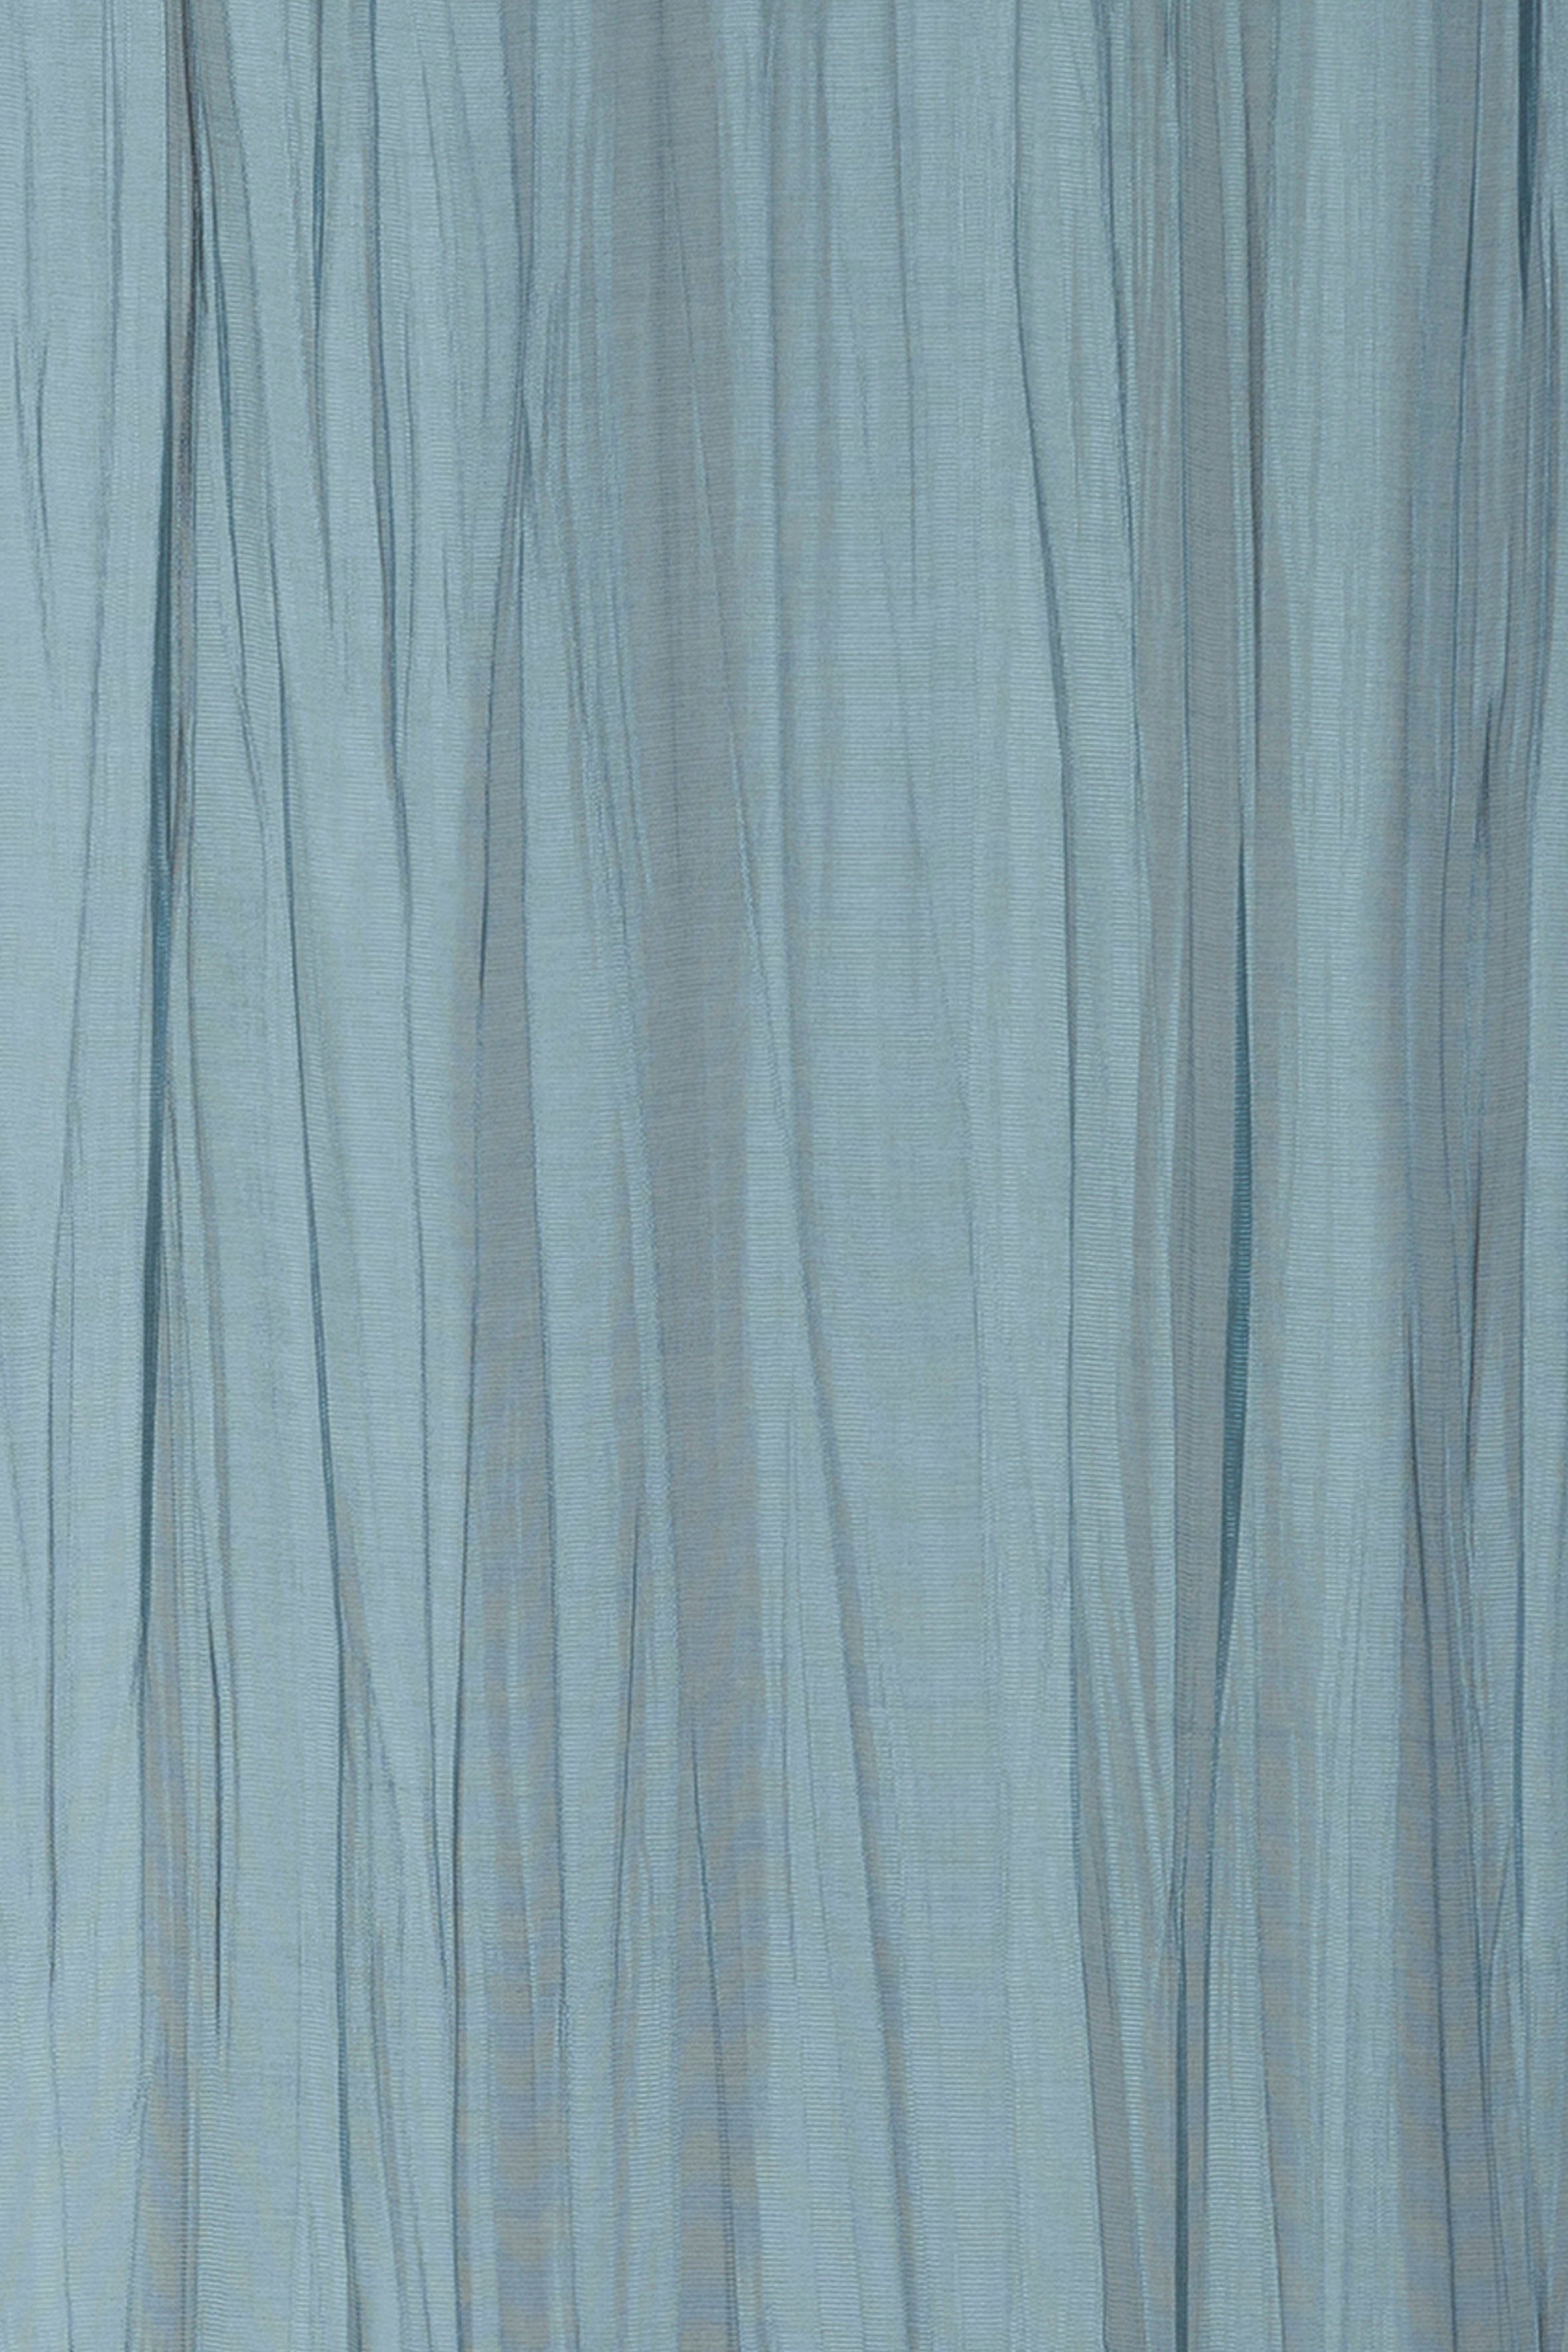 Vorhang Nomadi 01 01, 255x135cm (1 ELBERSDRUCKE, blau halbtransparent, Voile, Ösen Ösenschal Nomadi St)